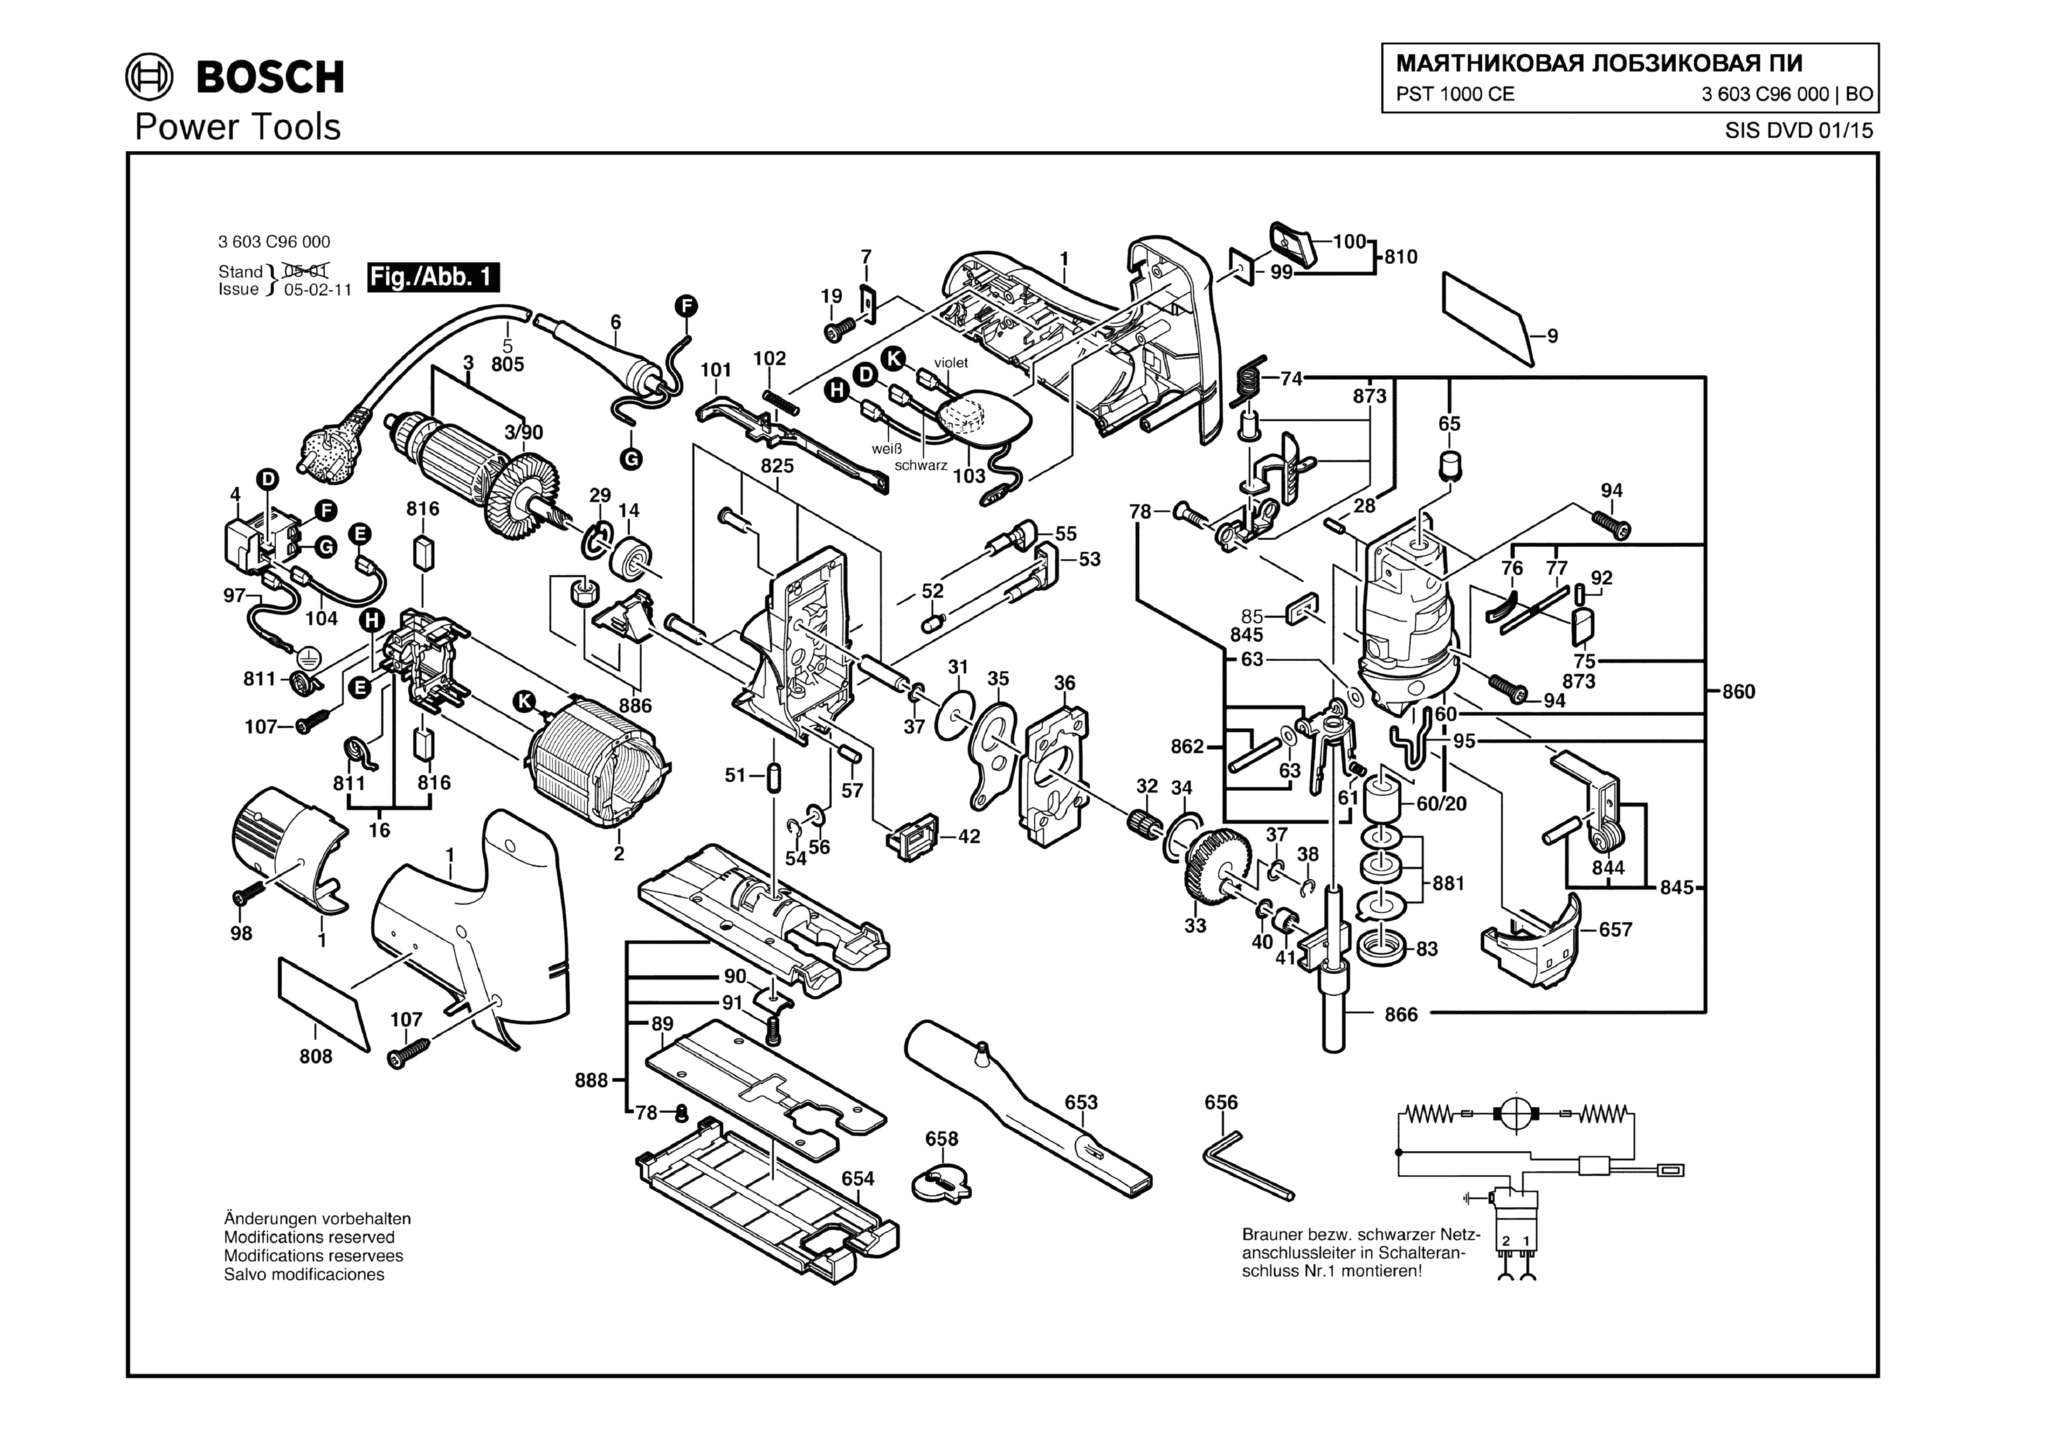 Запчасти, схема и деталировка Bosch PST 1000 CE (ТИП 3603C96000)